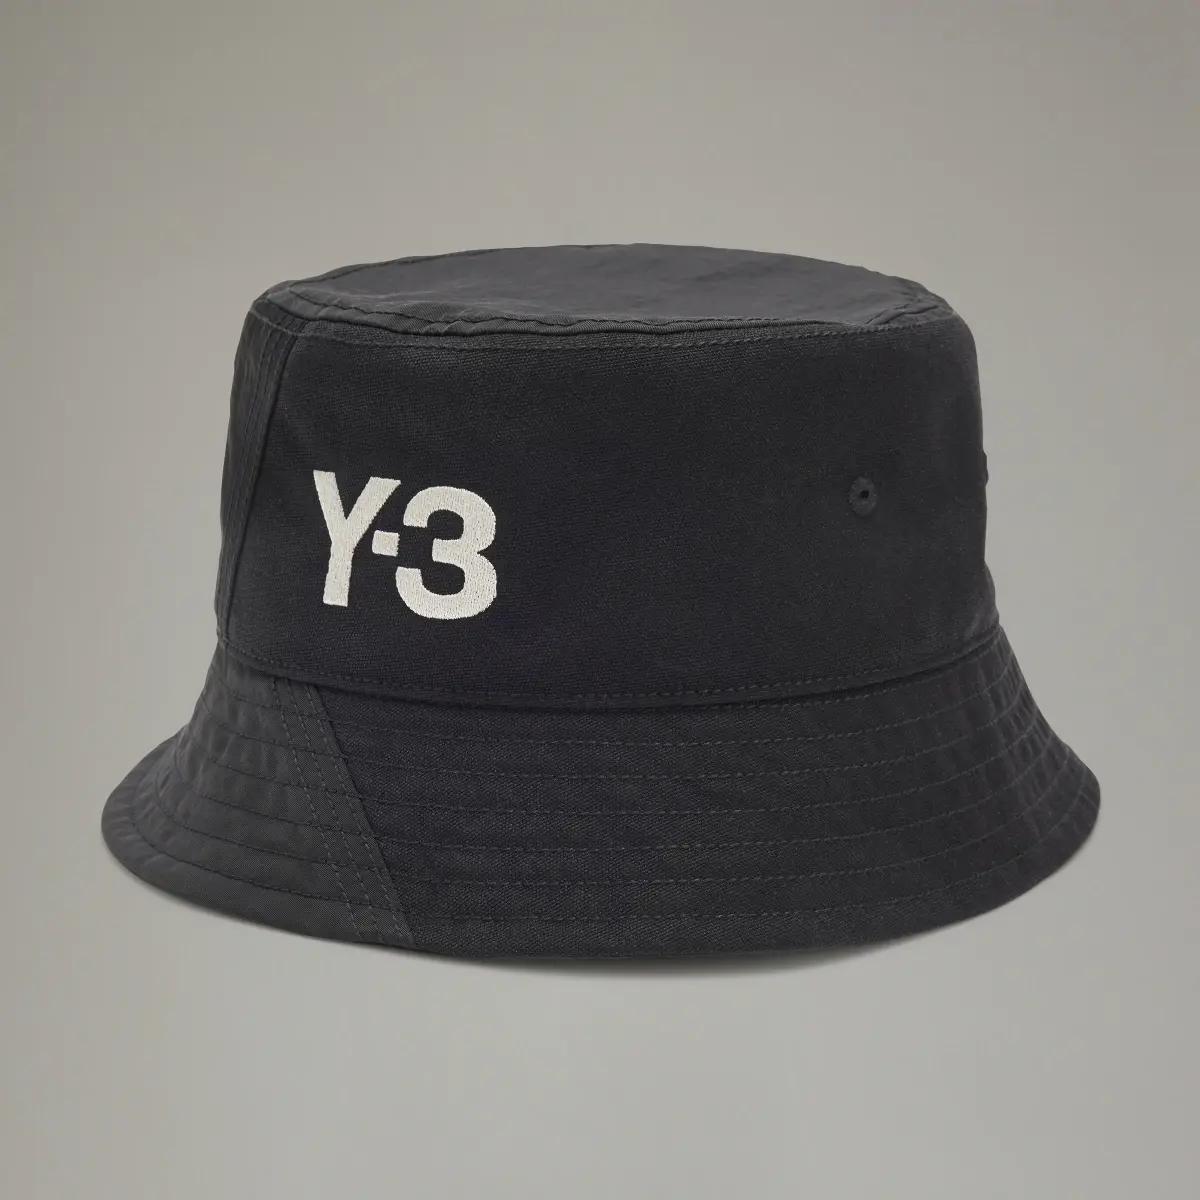 Adidas Y-3 BUCKET HAT. 2